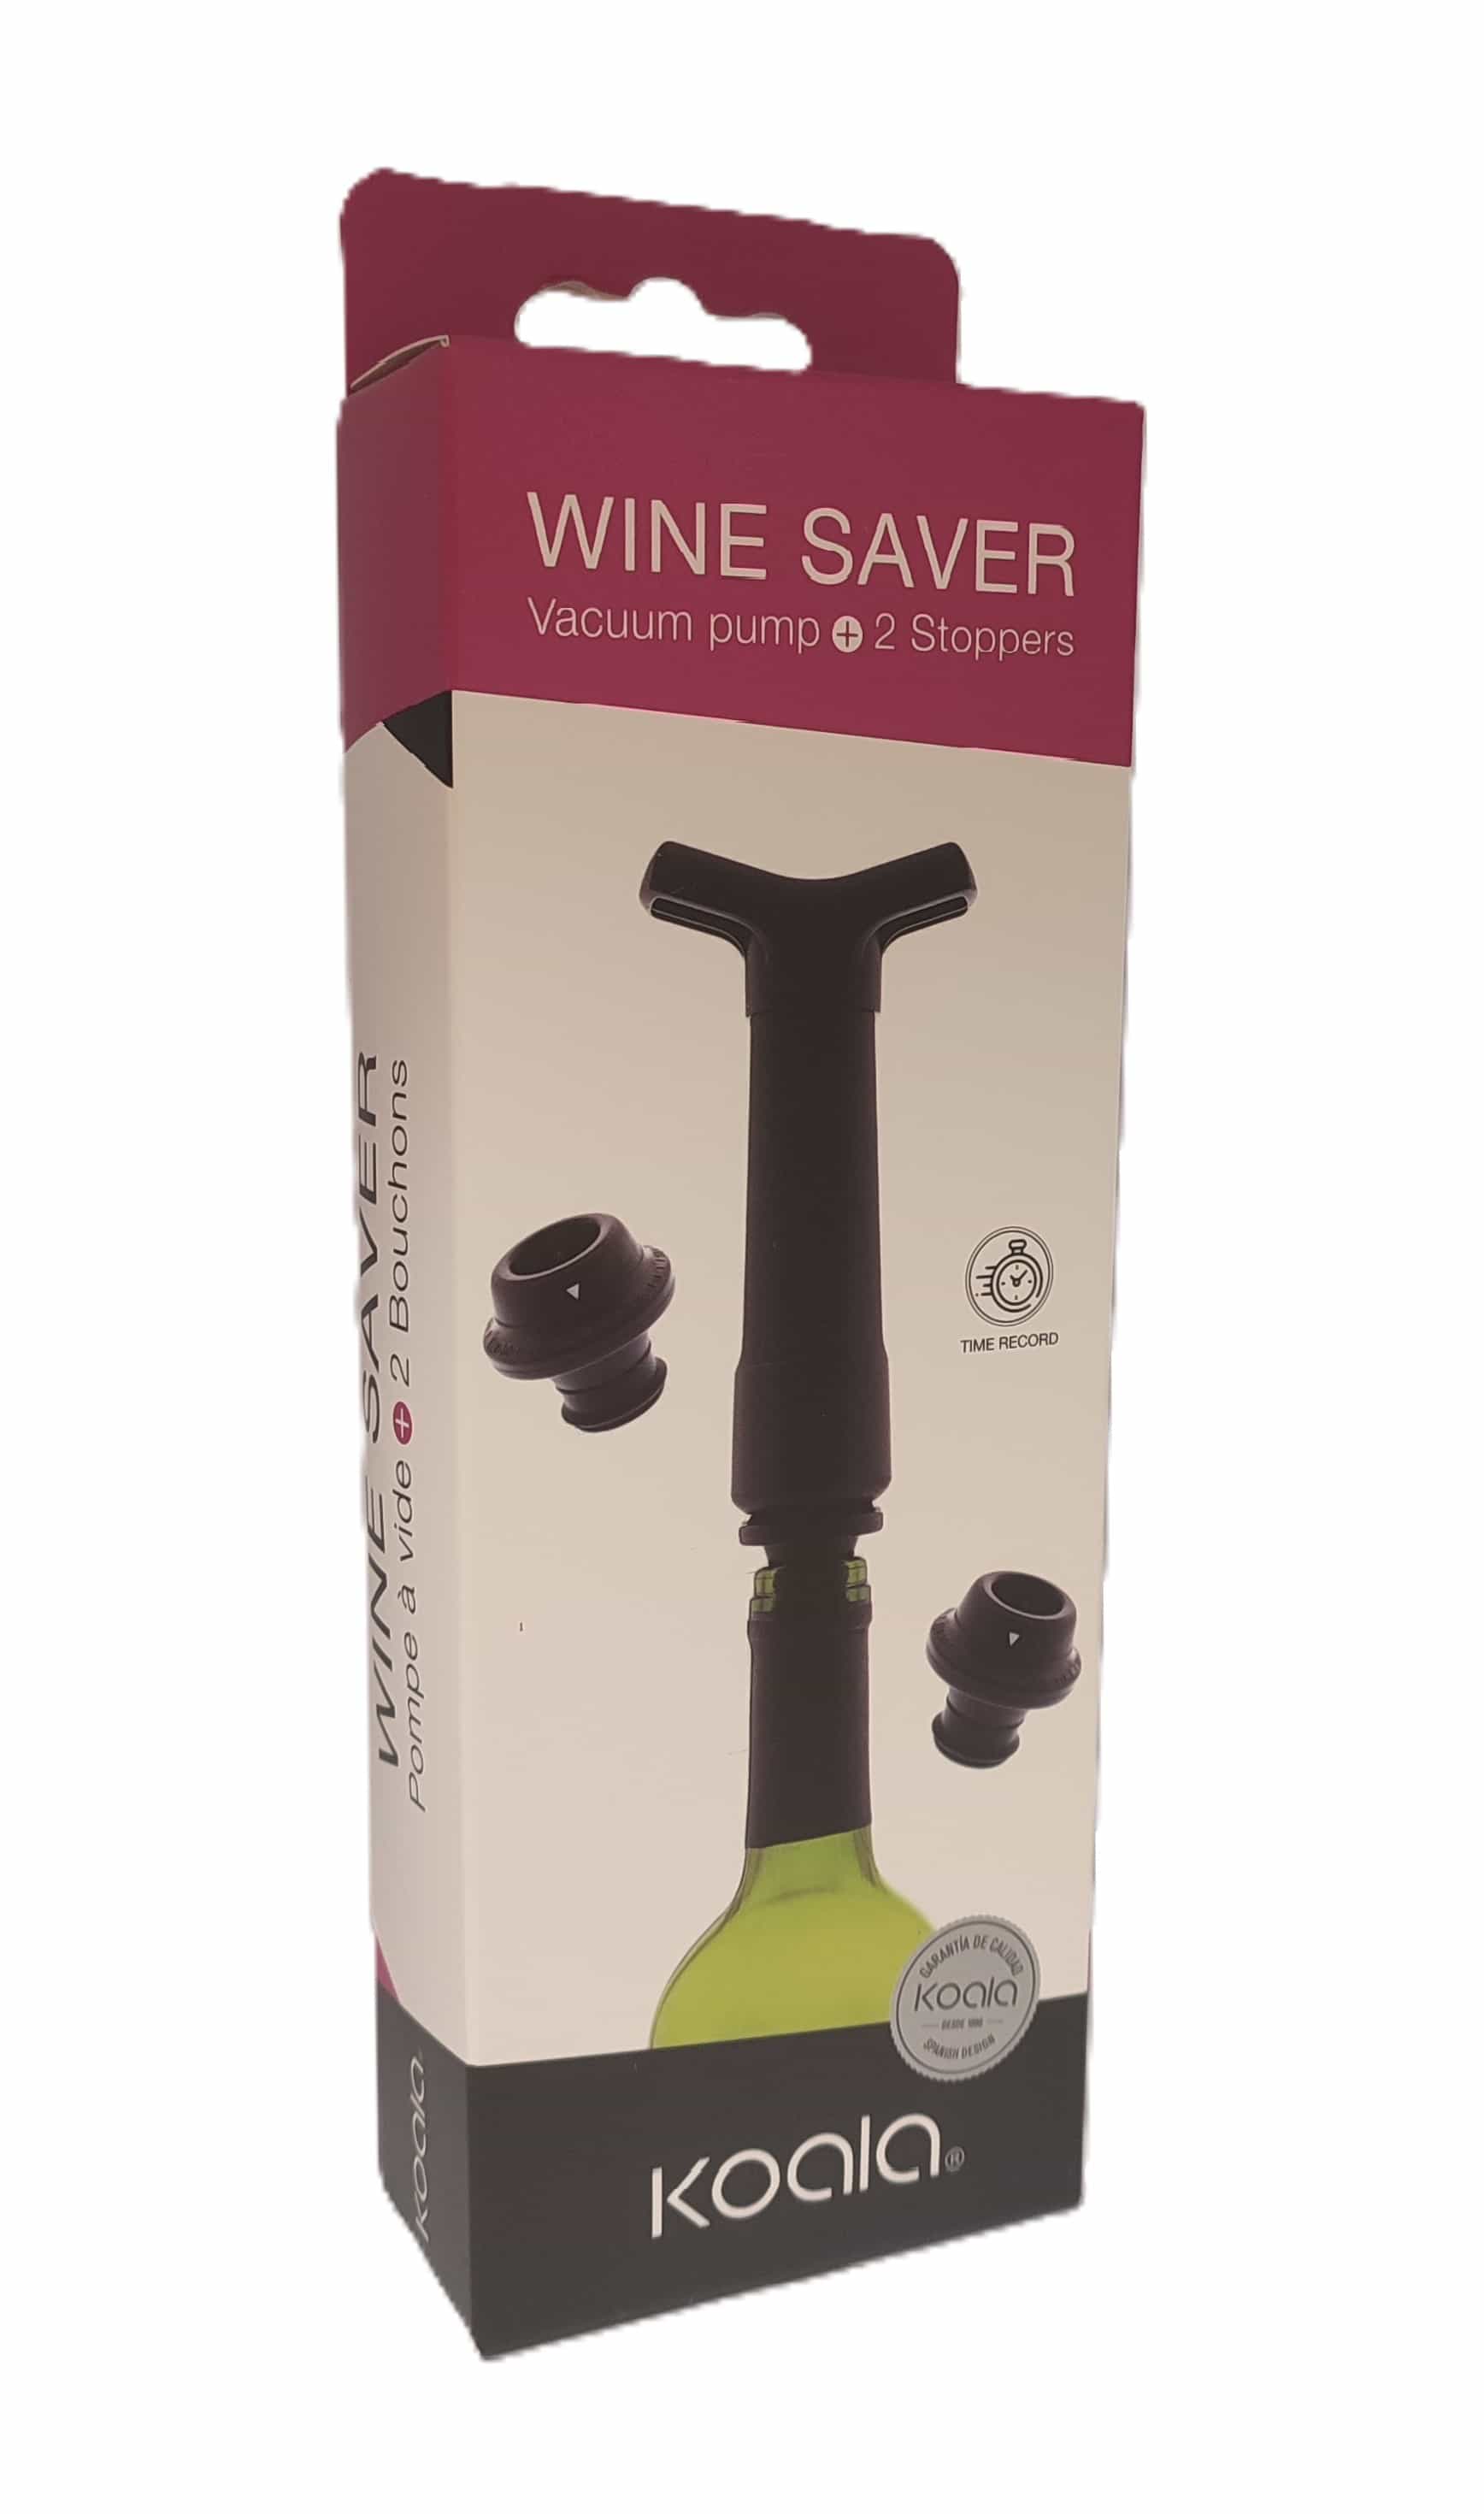 Wine saver - Bomba de vácuo e duas tampas 0